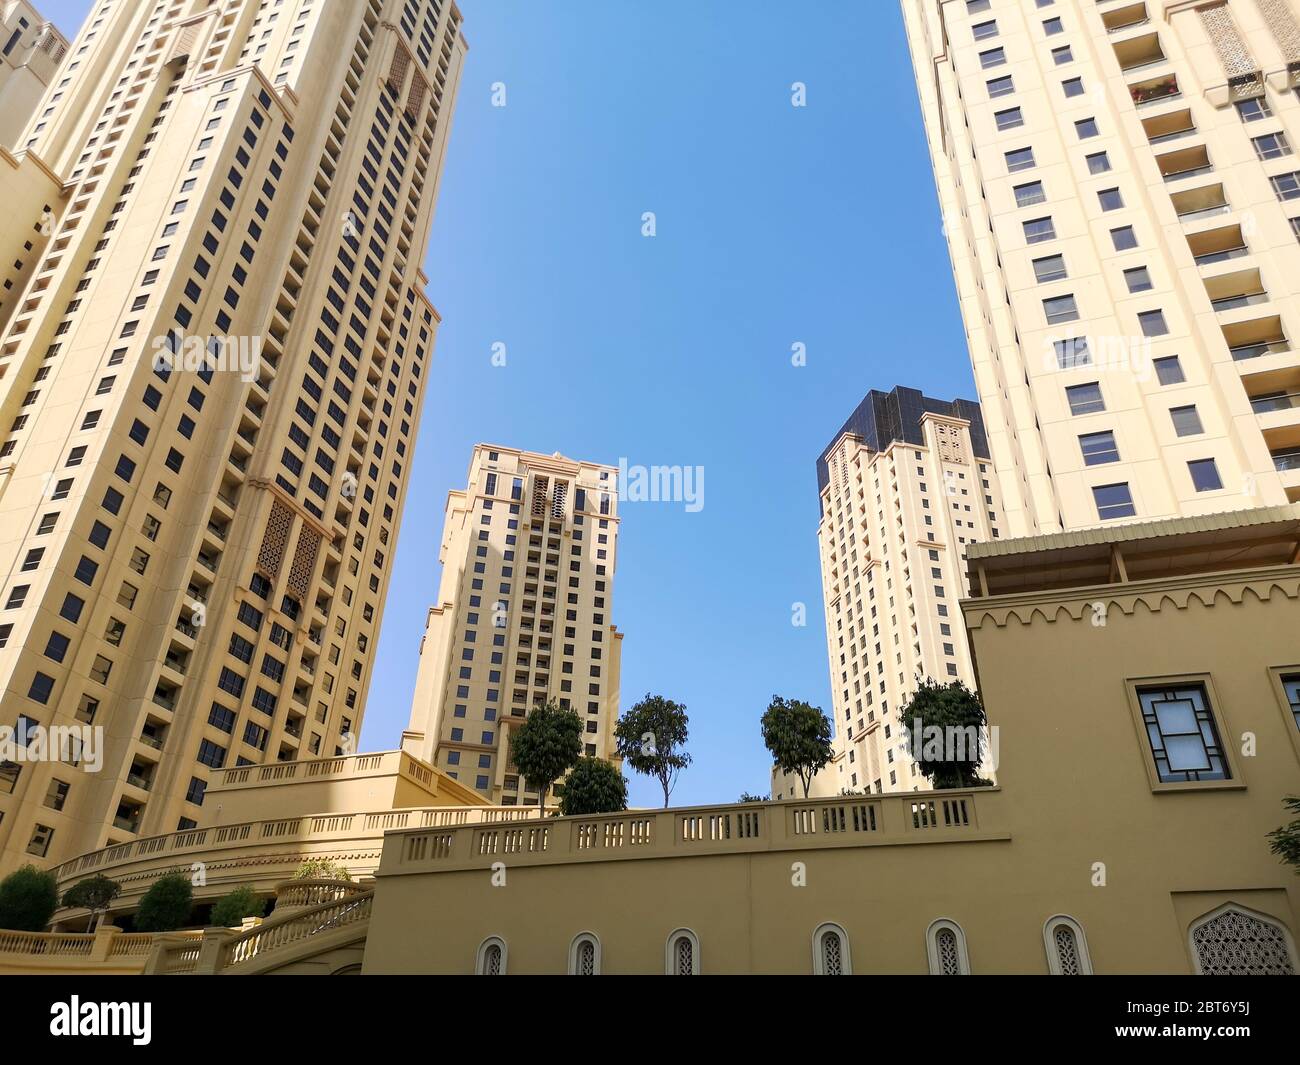 JBR, Jumeirah Beach Resort, eine neue touristische Attraktion Gegend mit Geschäften, Restaurants und Wohnungen Wolkenkratzer in Dubai, Vereinigte Arabische Emirate Stockfoto